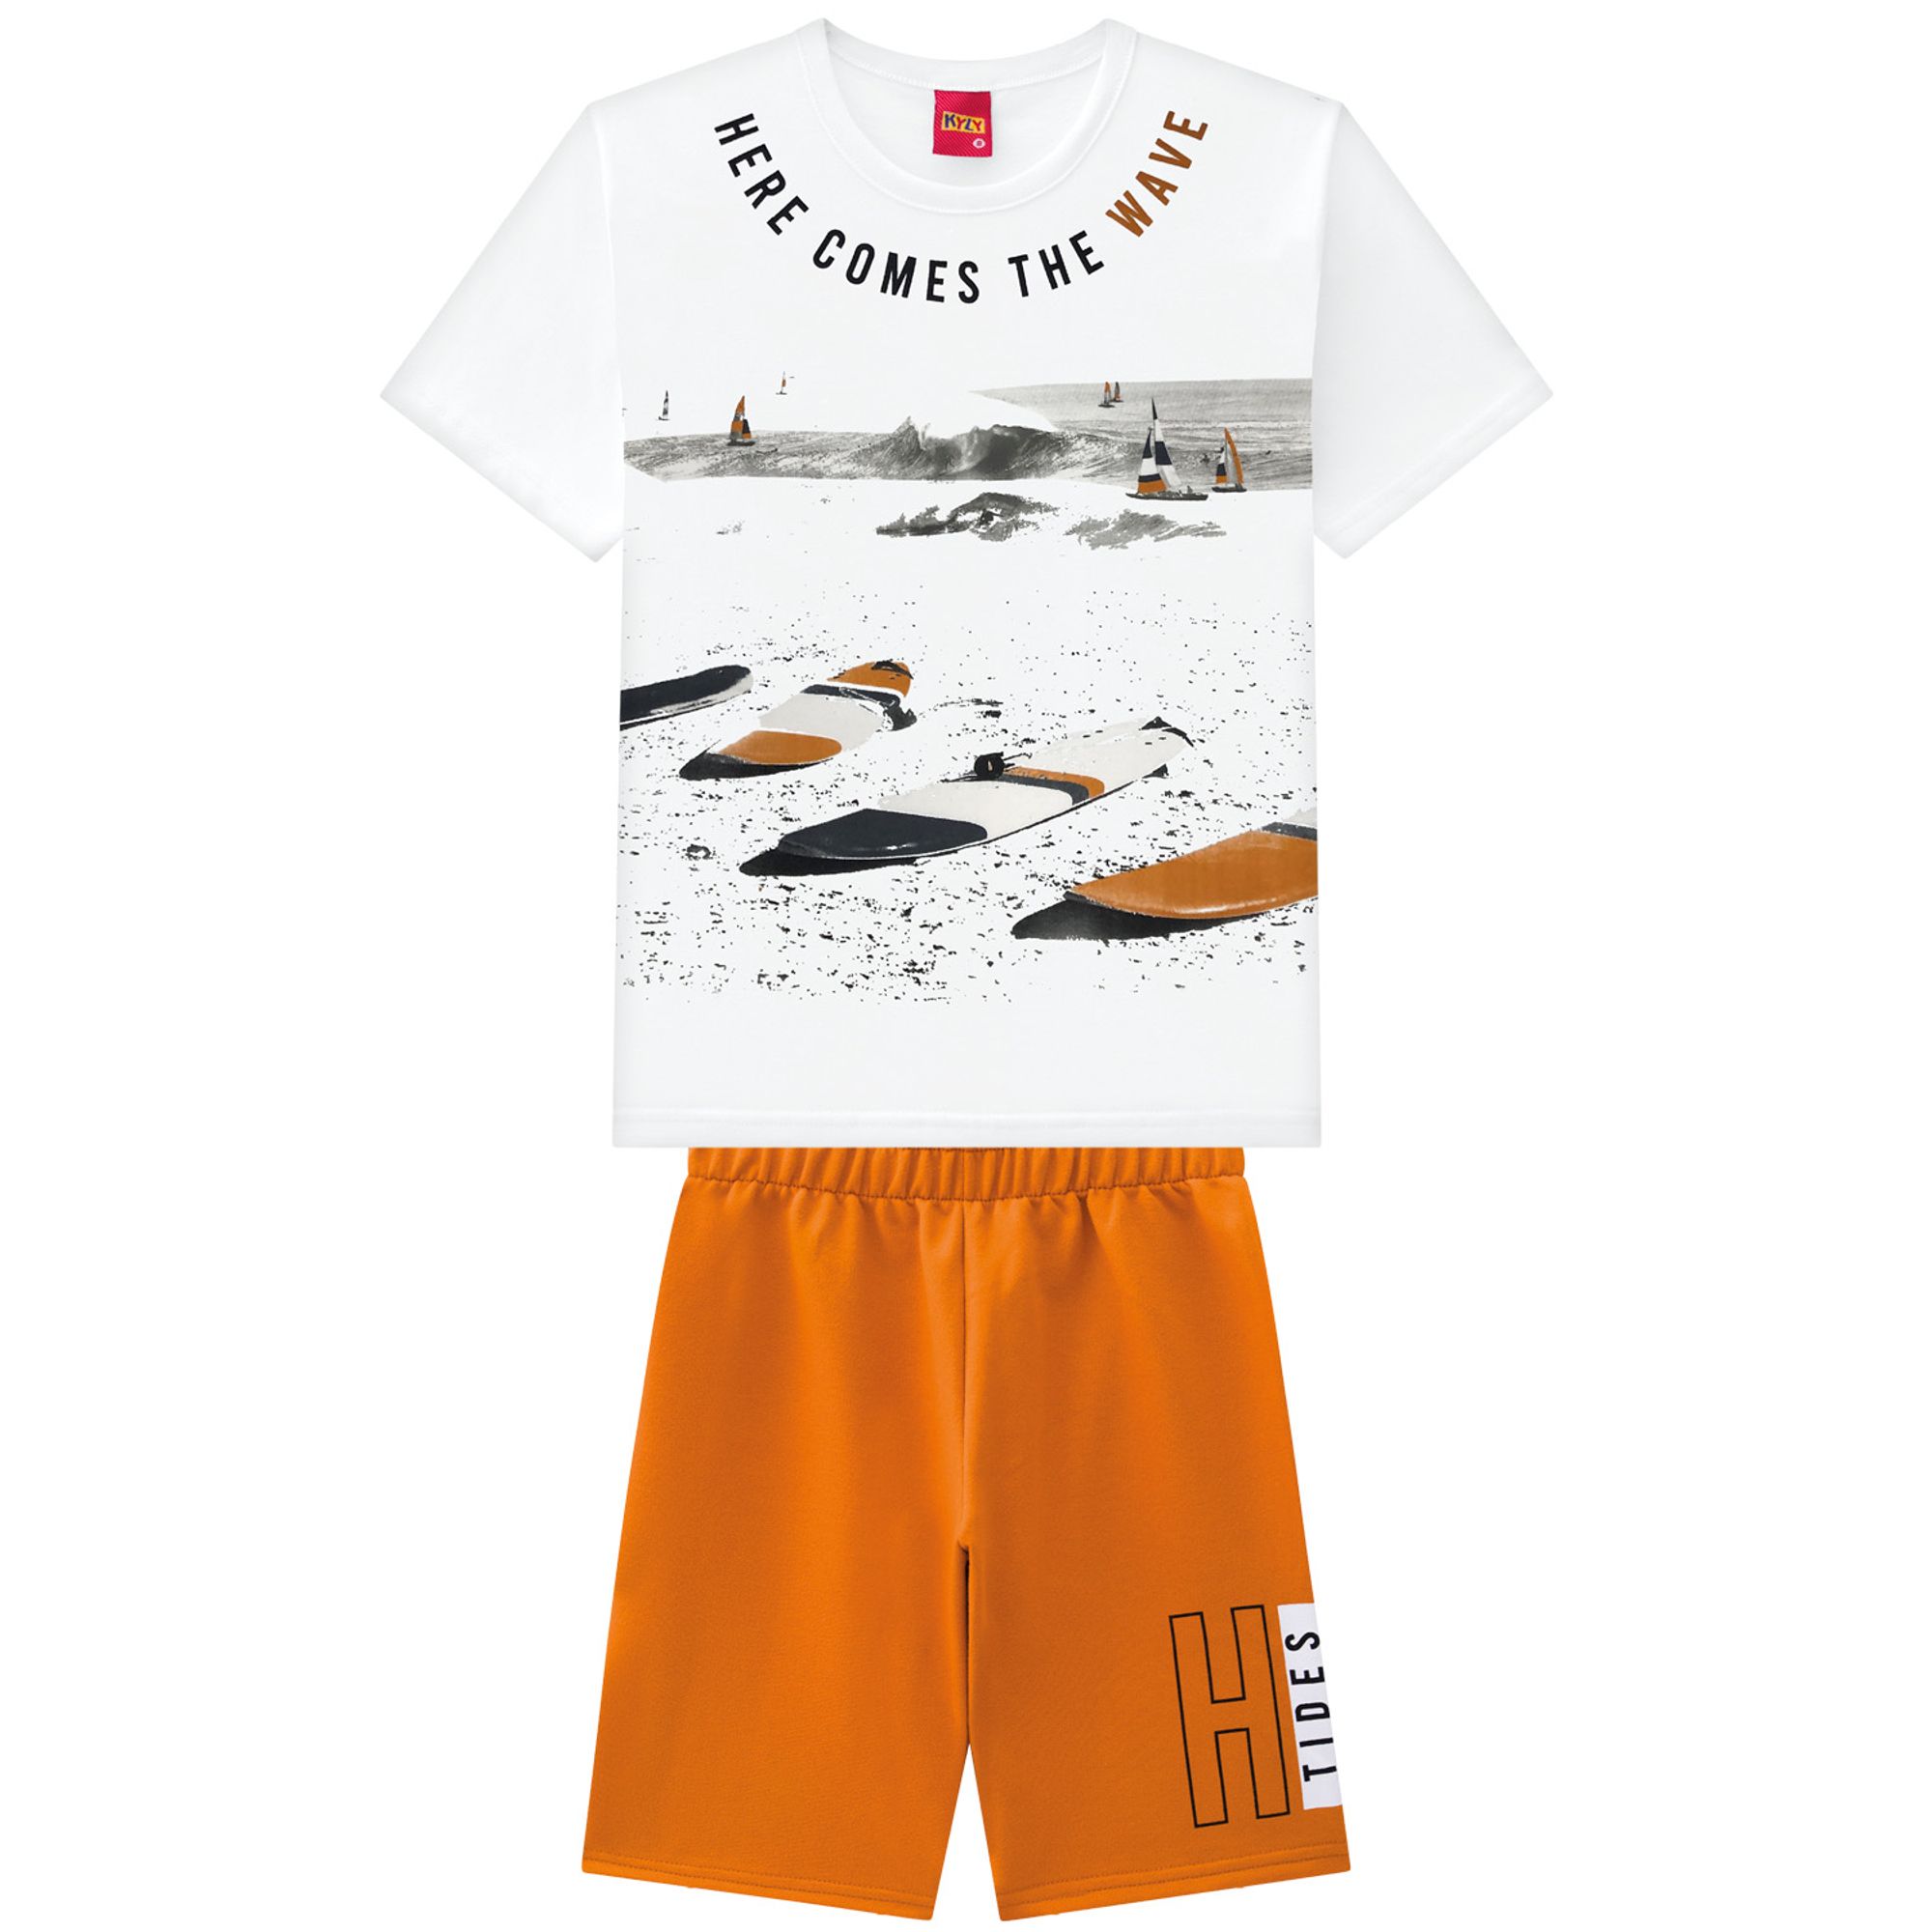 conjunto-infantil-camiseta-branca-surfe-wave-e-bermuda-laranja-1